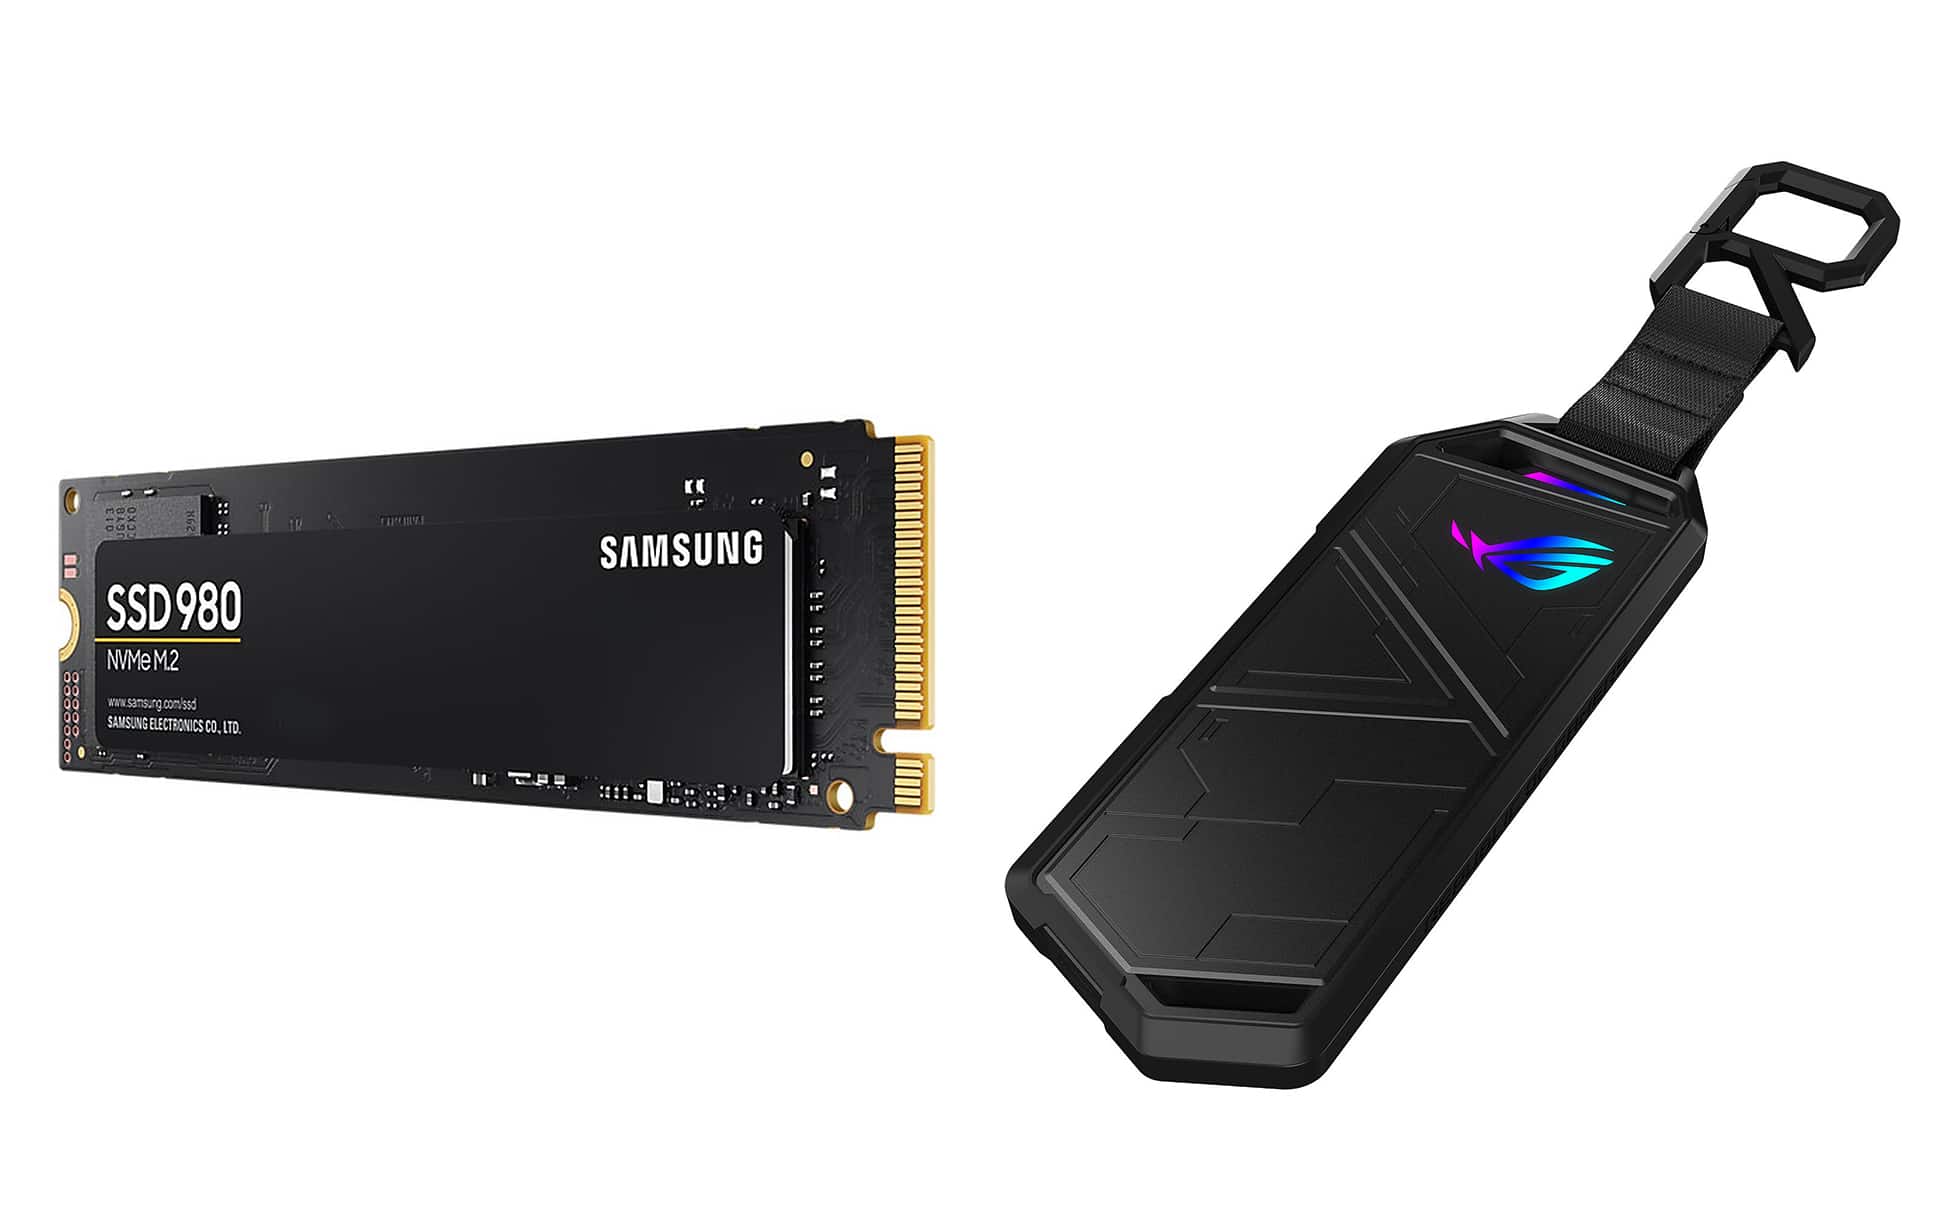 Bon plan : un SSD NVMe Samsung avec boîtier ASUS STRIX Arion à